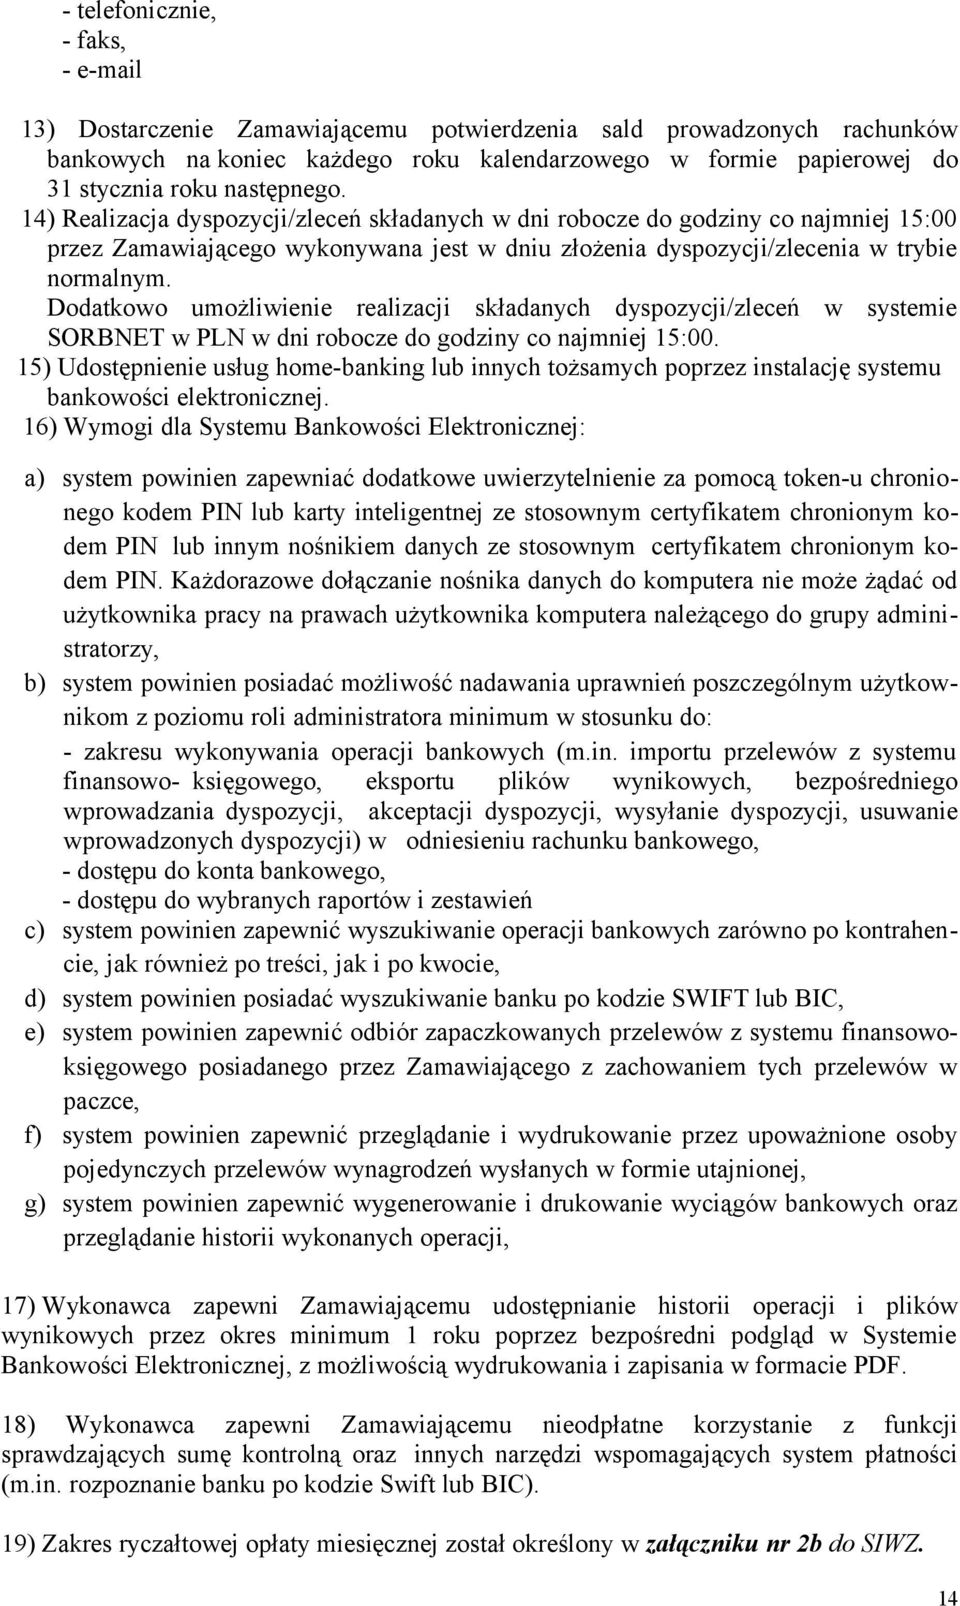 Dodatkowo umożliwienie realizacji składanych dyspozycji/zleceń w systemie SORBNET w PLN w dni robocze do godziny co najmniej 15:00.